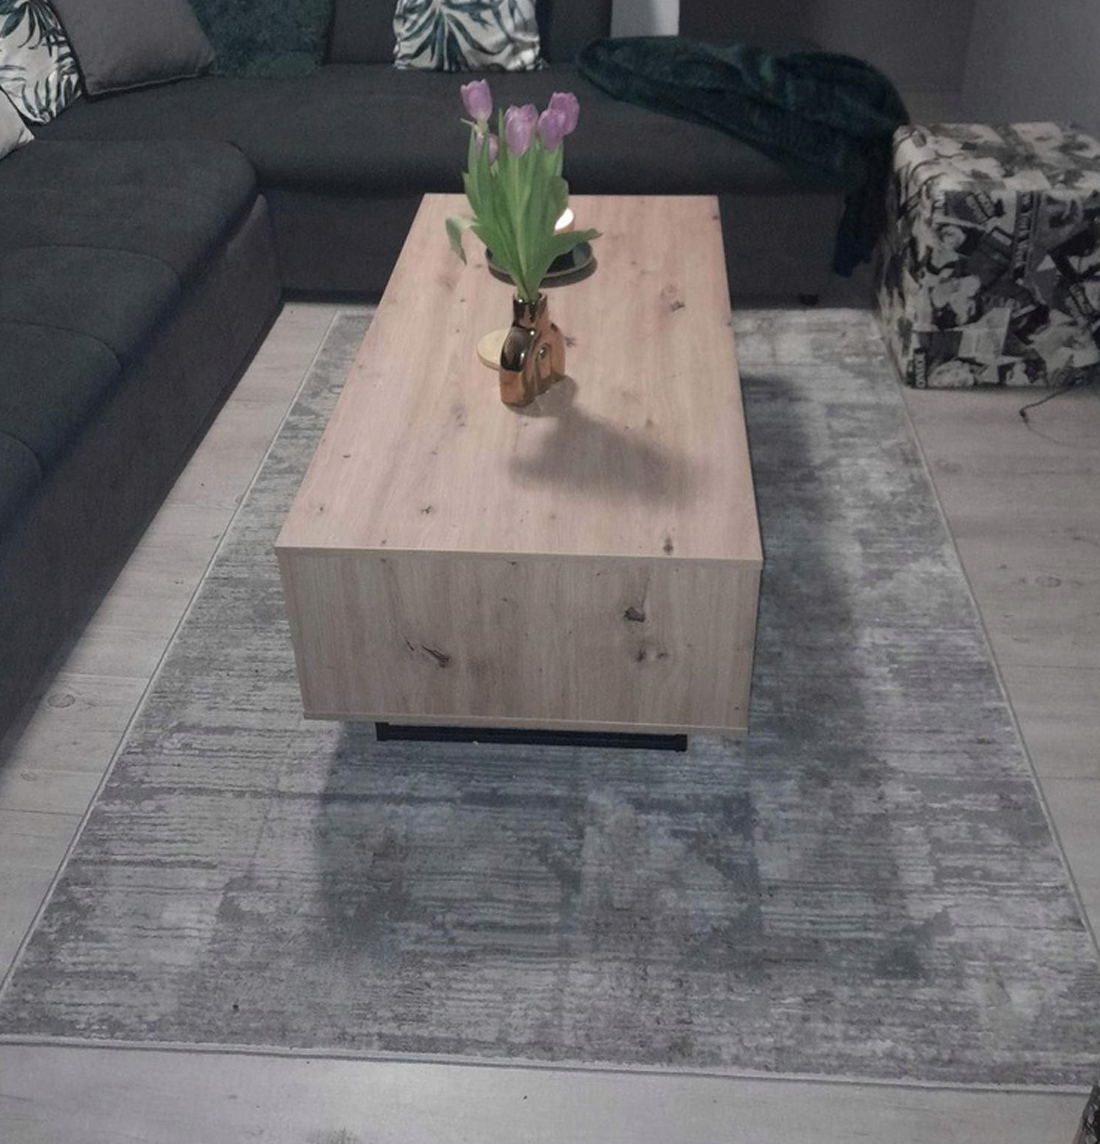 Plyšový koberec MONACO 10 béžovo šedý 160x220 cm